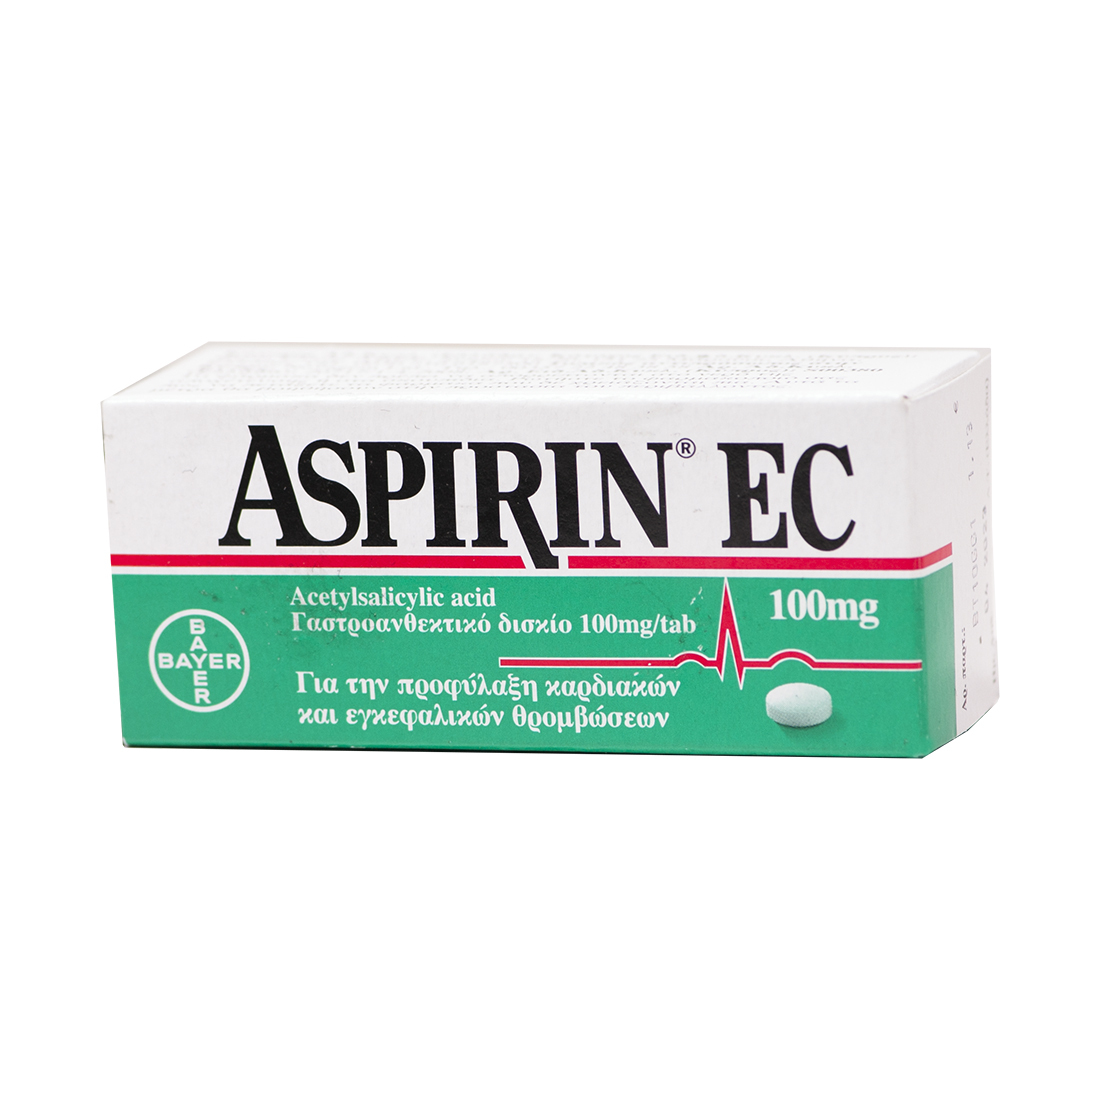 Аспирин после 60. Aspirin n 100 мг Байер. Аспирин Bayer 75 мг. Ацетилсалициловая кислота 75 мг. Аспирин (Bayer)100 MG.